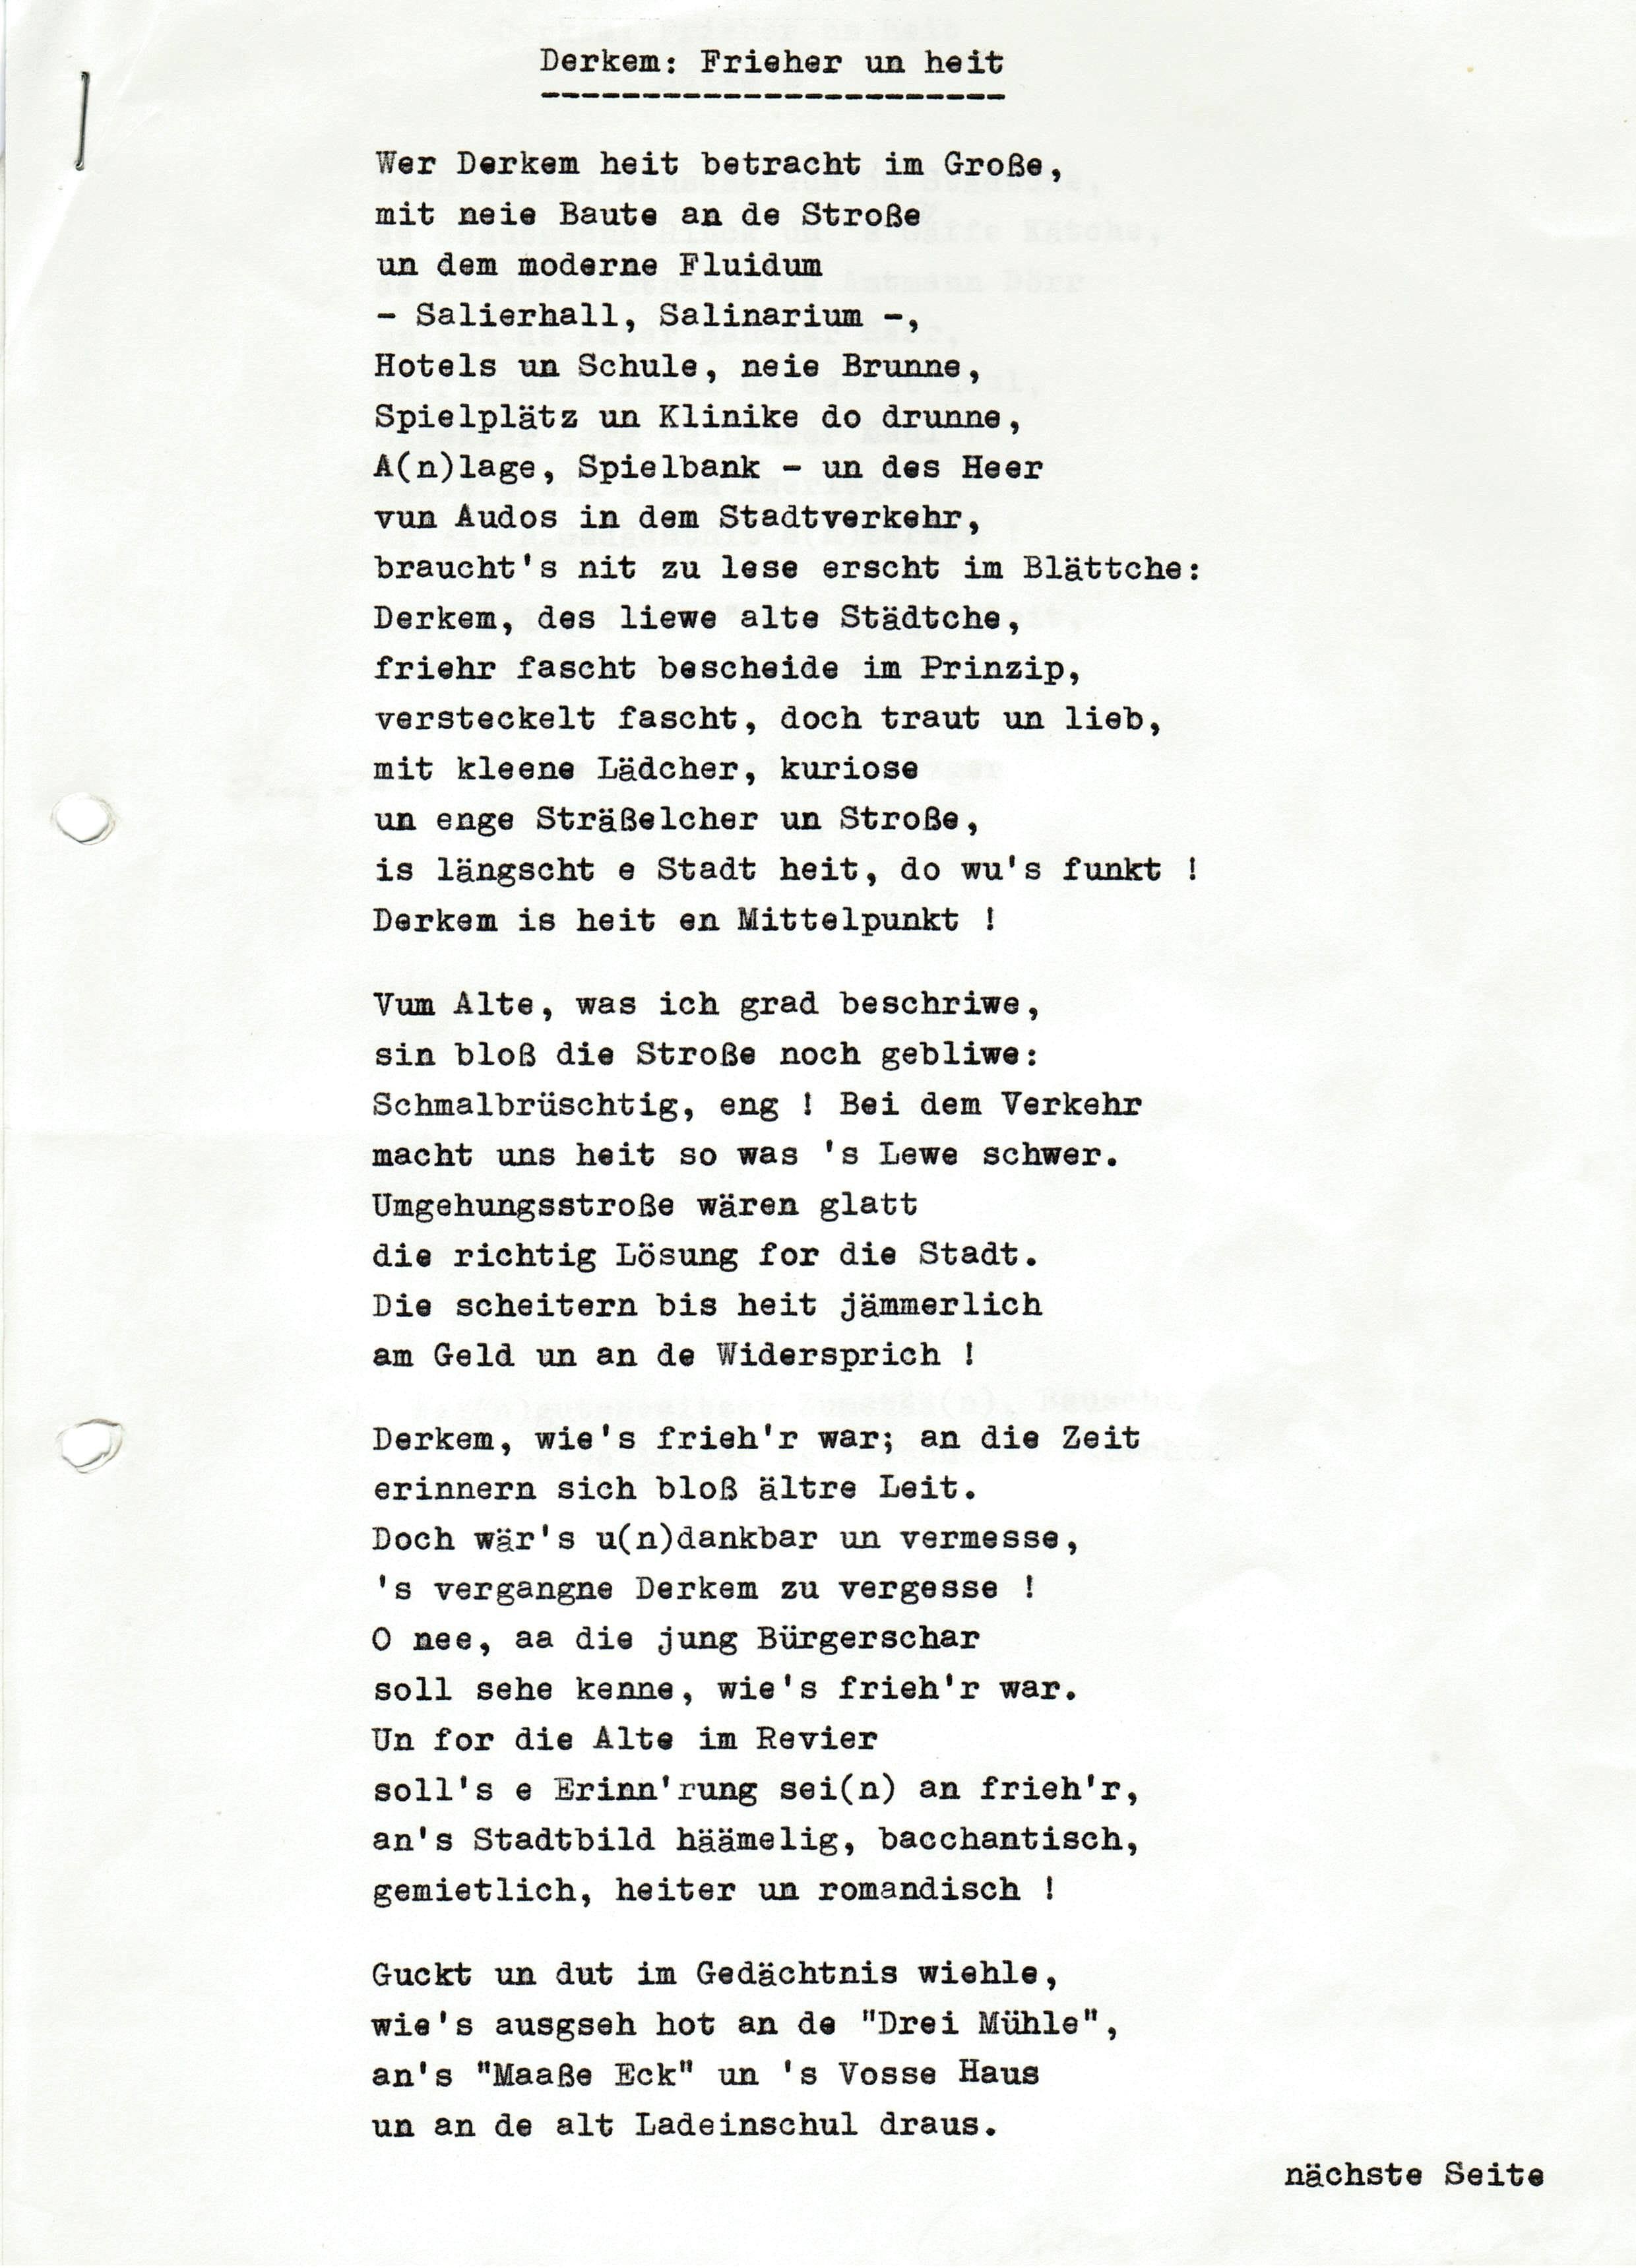 Foto-Sammlung Adolf Krapp, Ordner 1: Alt Derkem, 1989 (Museumsgesellschaft Bad Dürkheim e.V. CC BY-NC-SA)